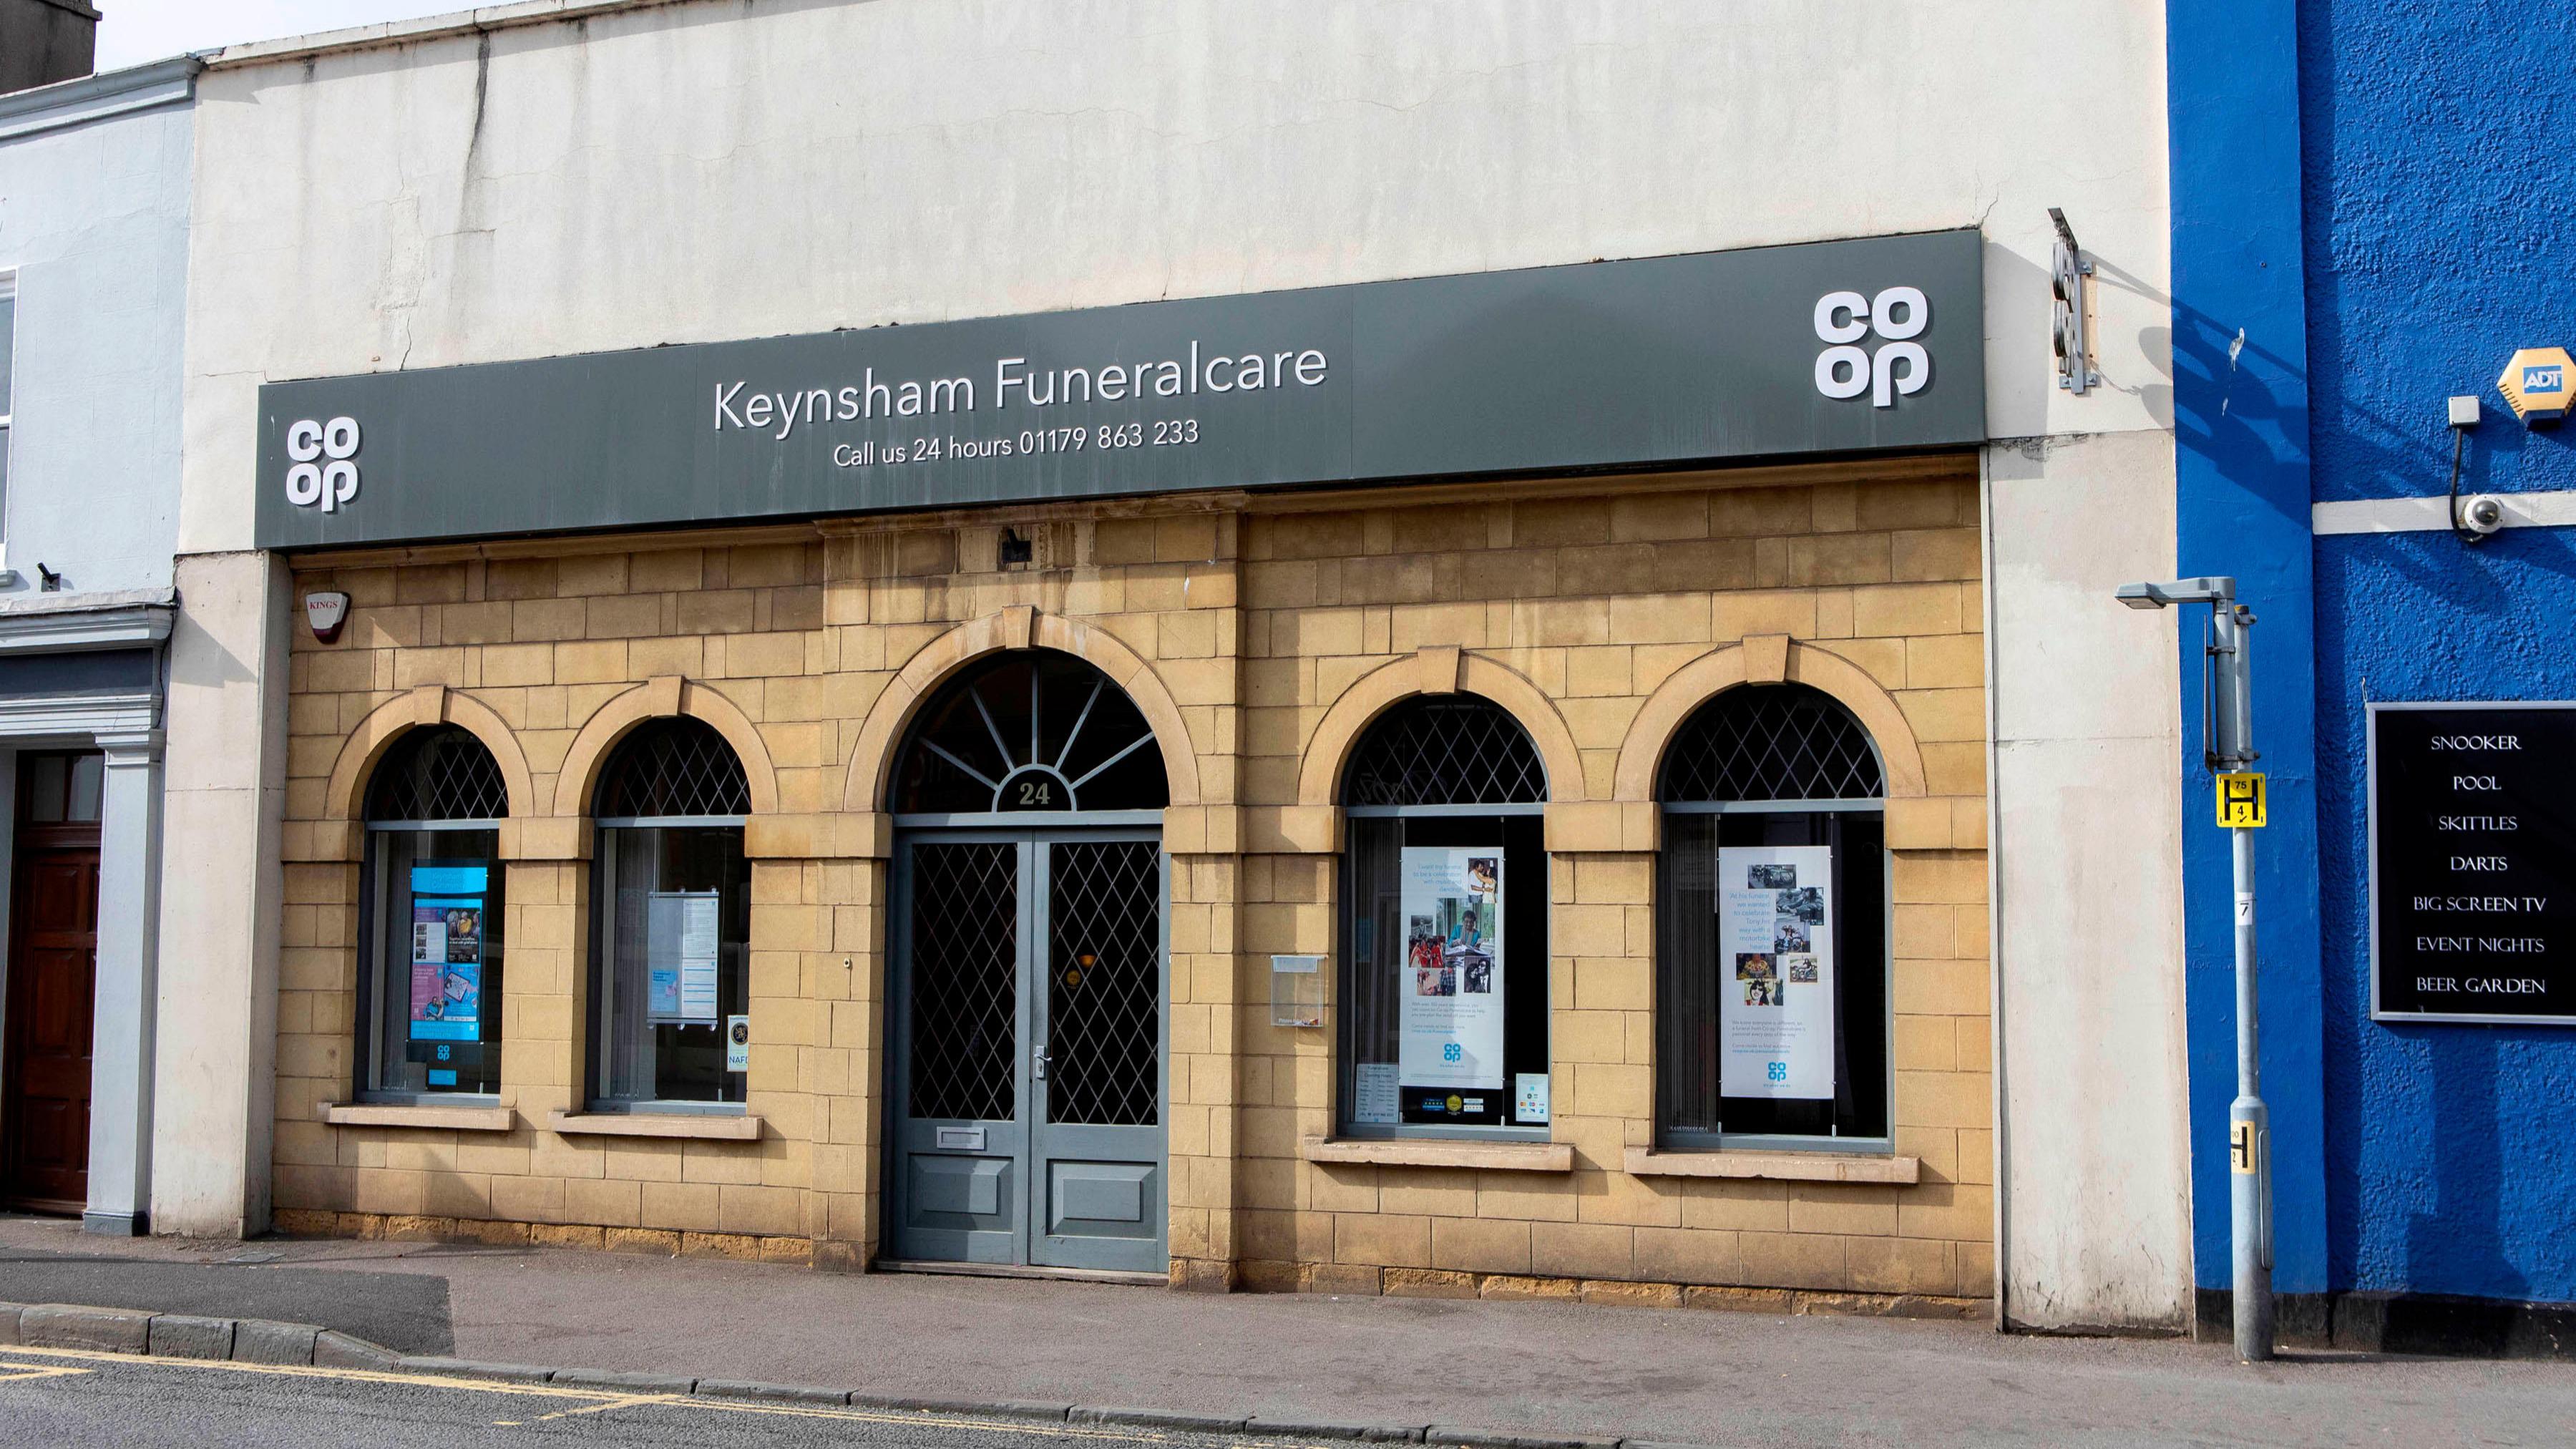 Images Keynsham Funeralcare